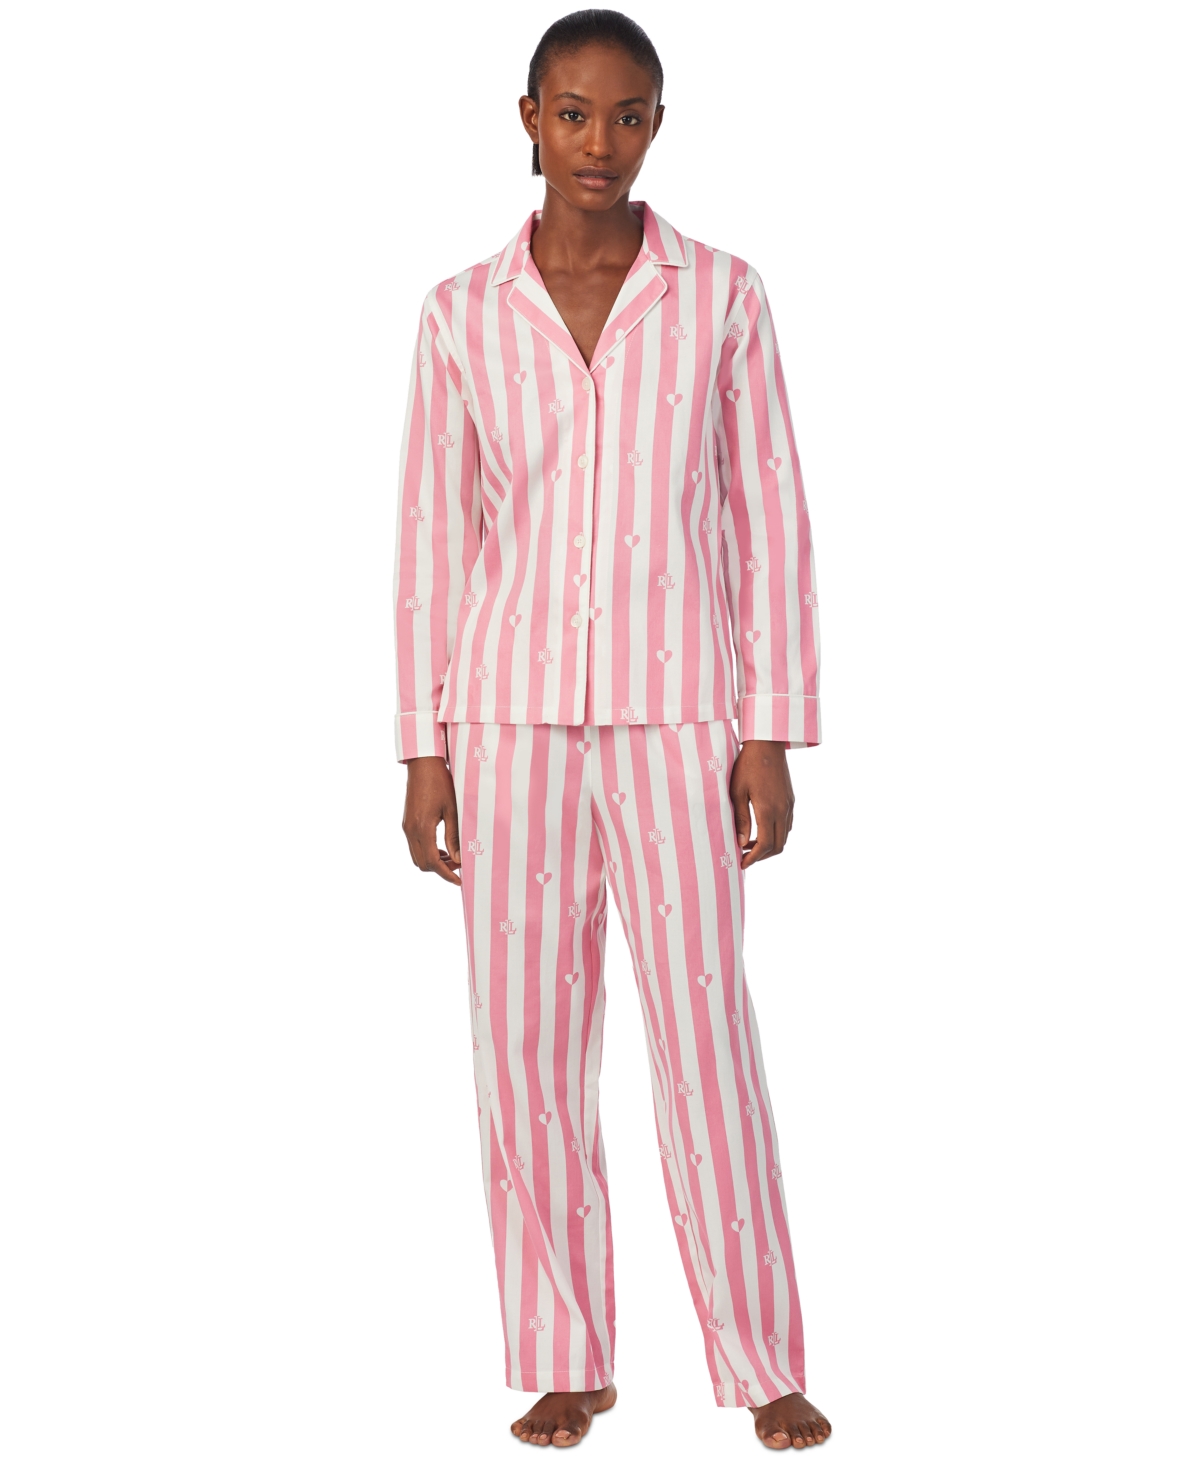 LAUREN RALPH LAUREN Pajamas for Women